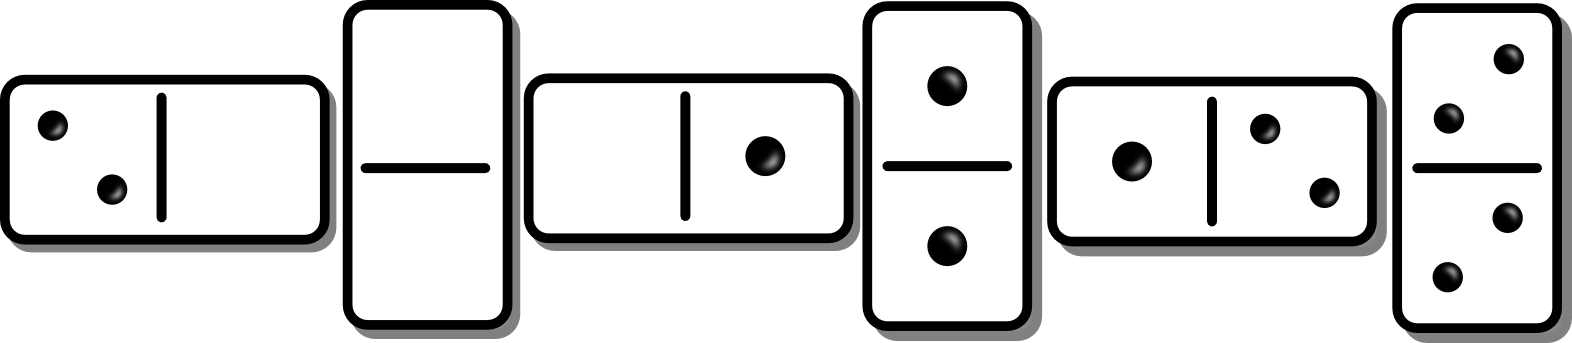 Domino variation